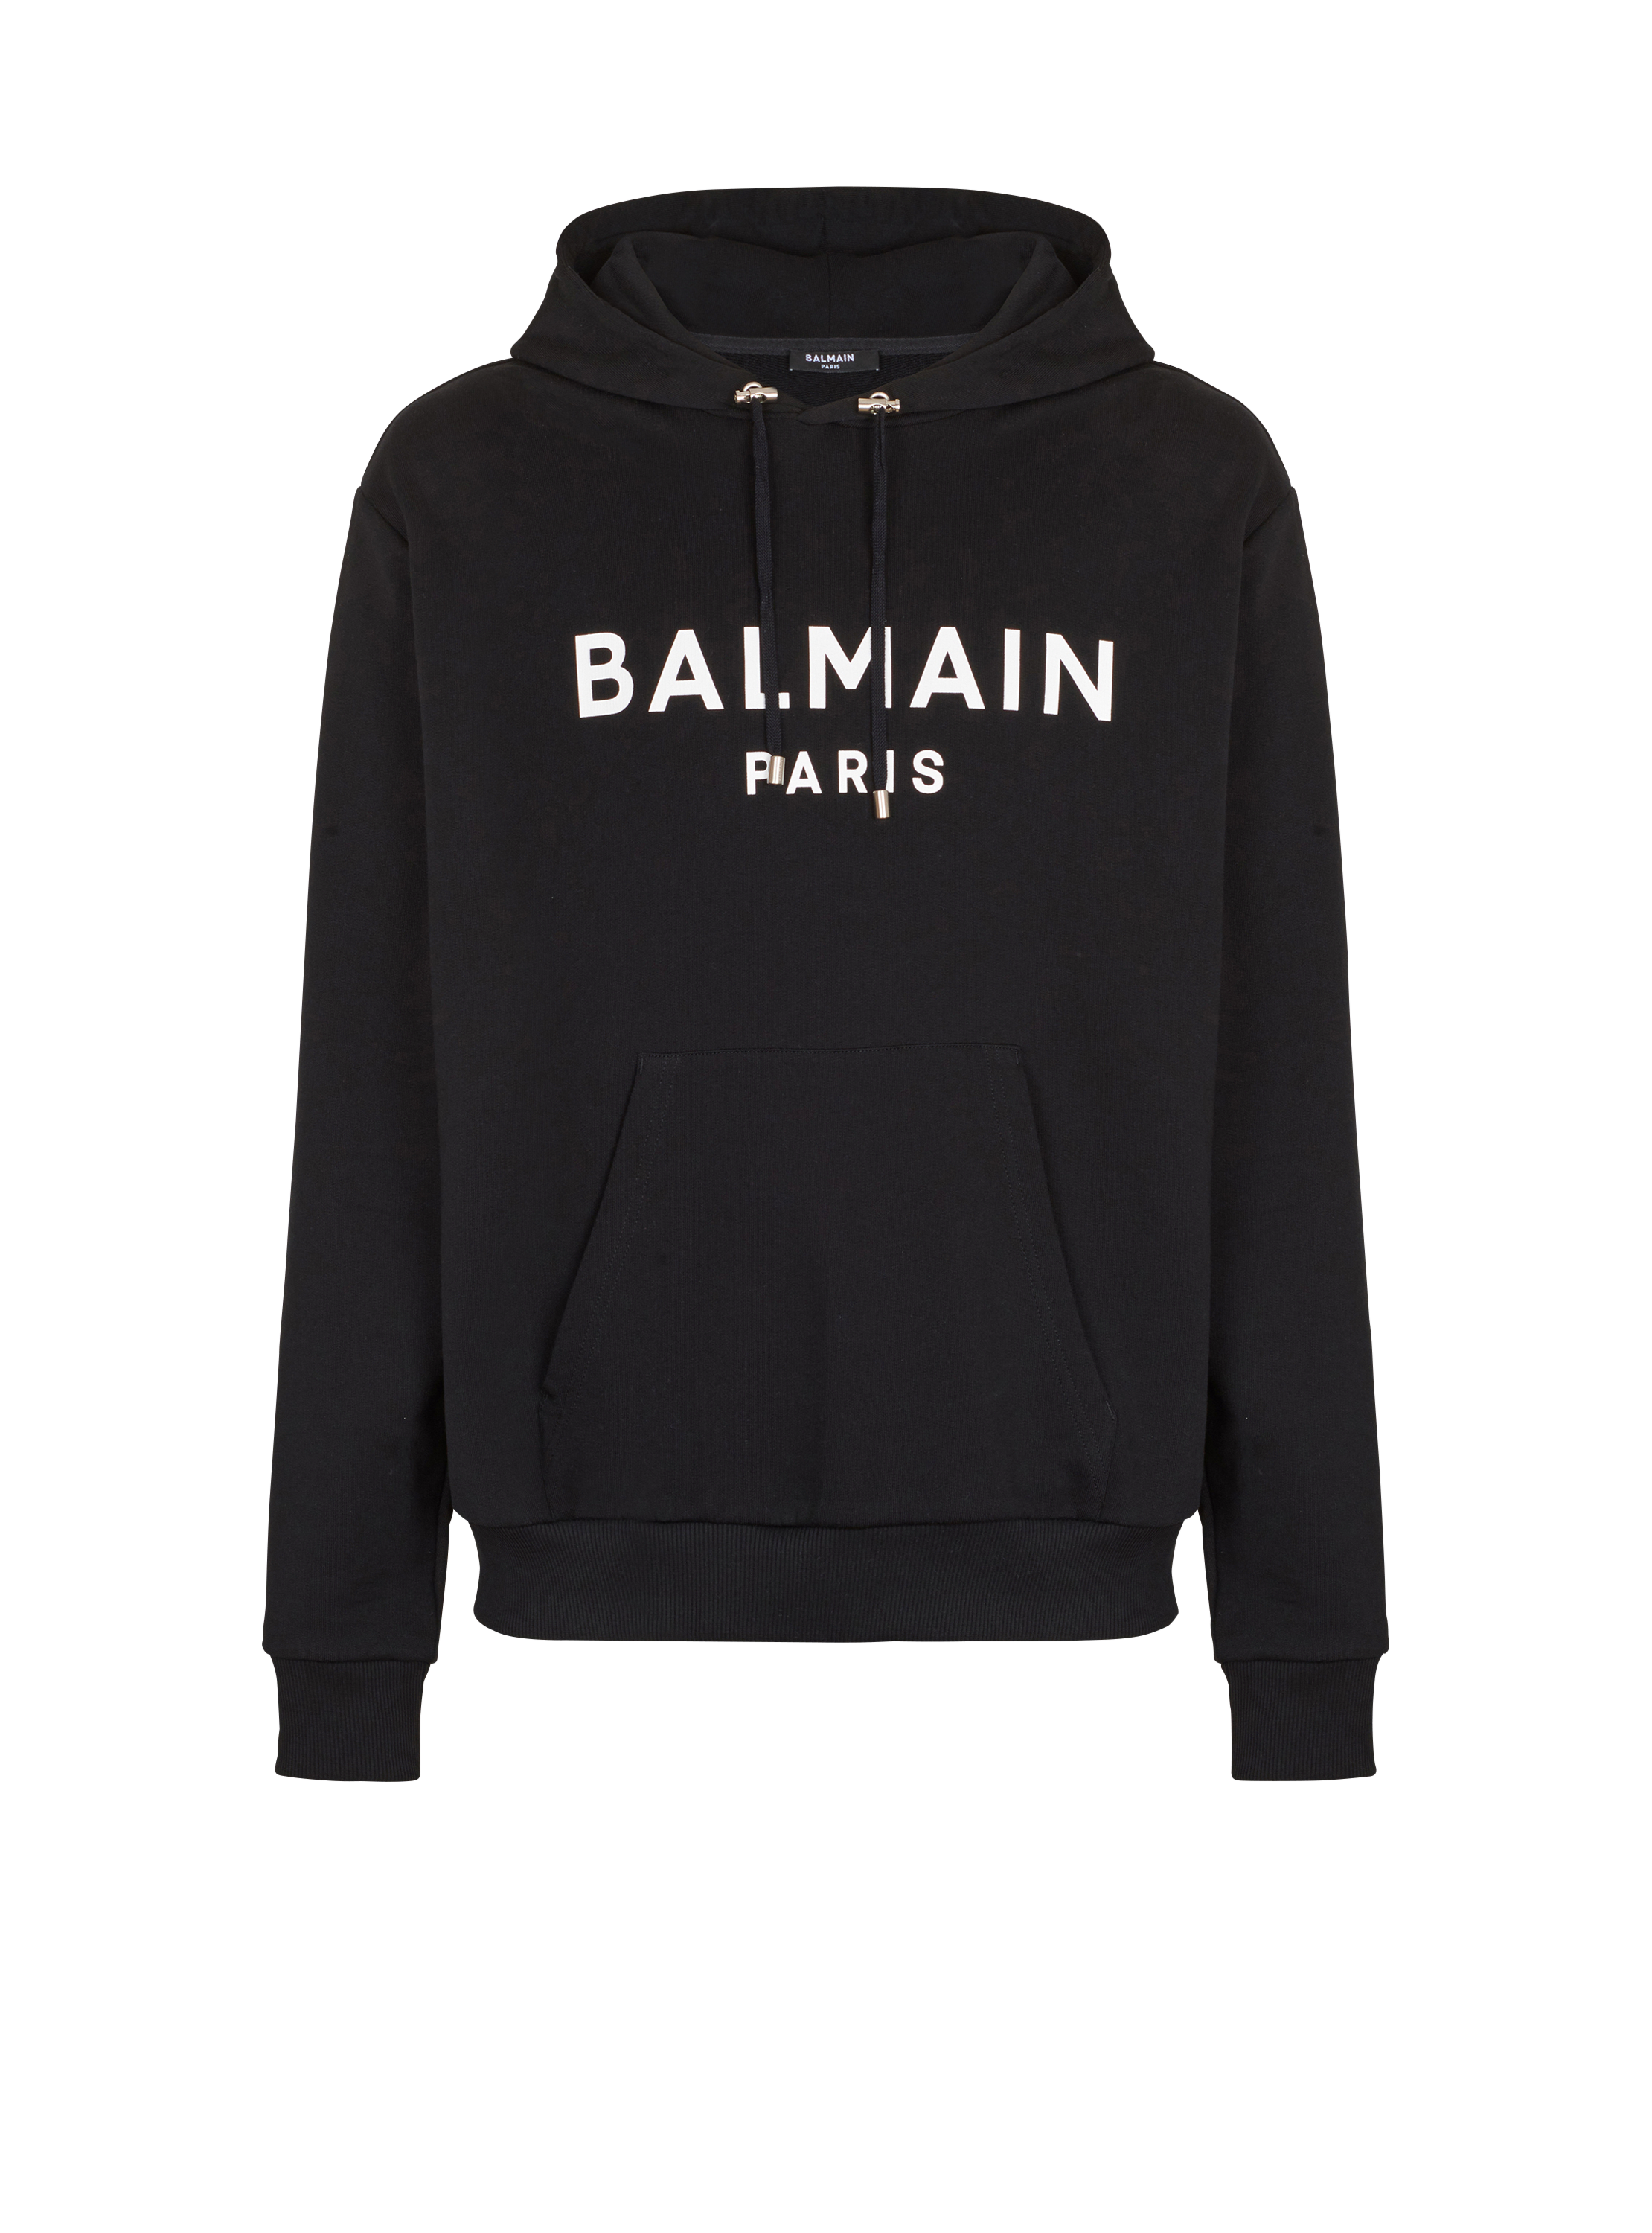 Sudadera con capucha de algodón con logotipo de Balmain estampado, negro, hi-res